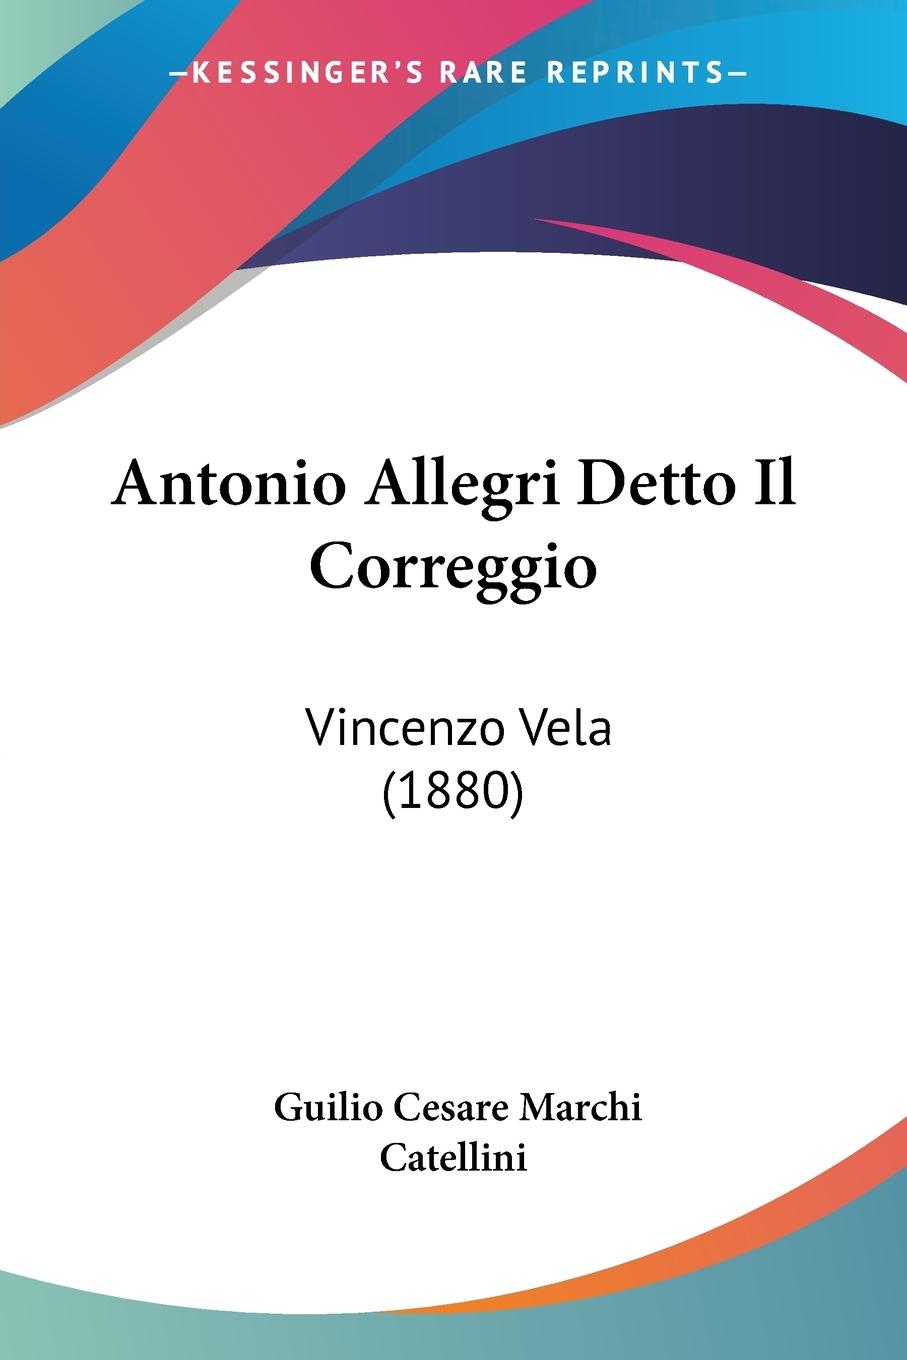 Antonio Allegri Detto Il Correggio - Catellini, Guilio Cesare Marchi